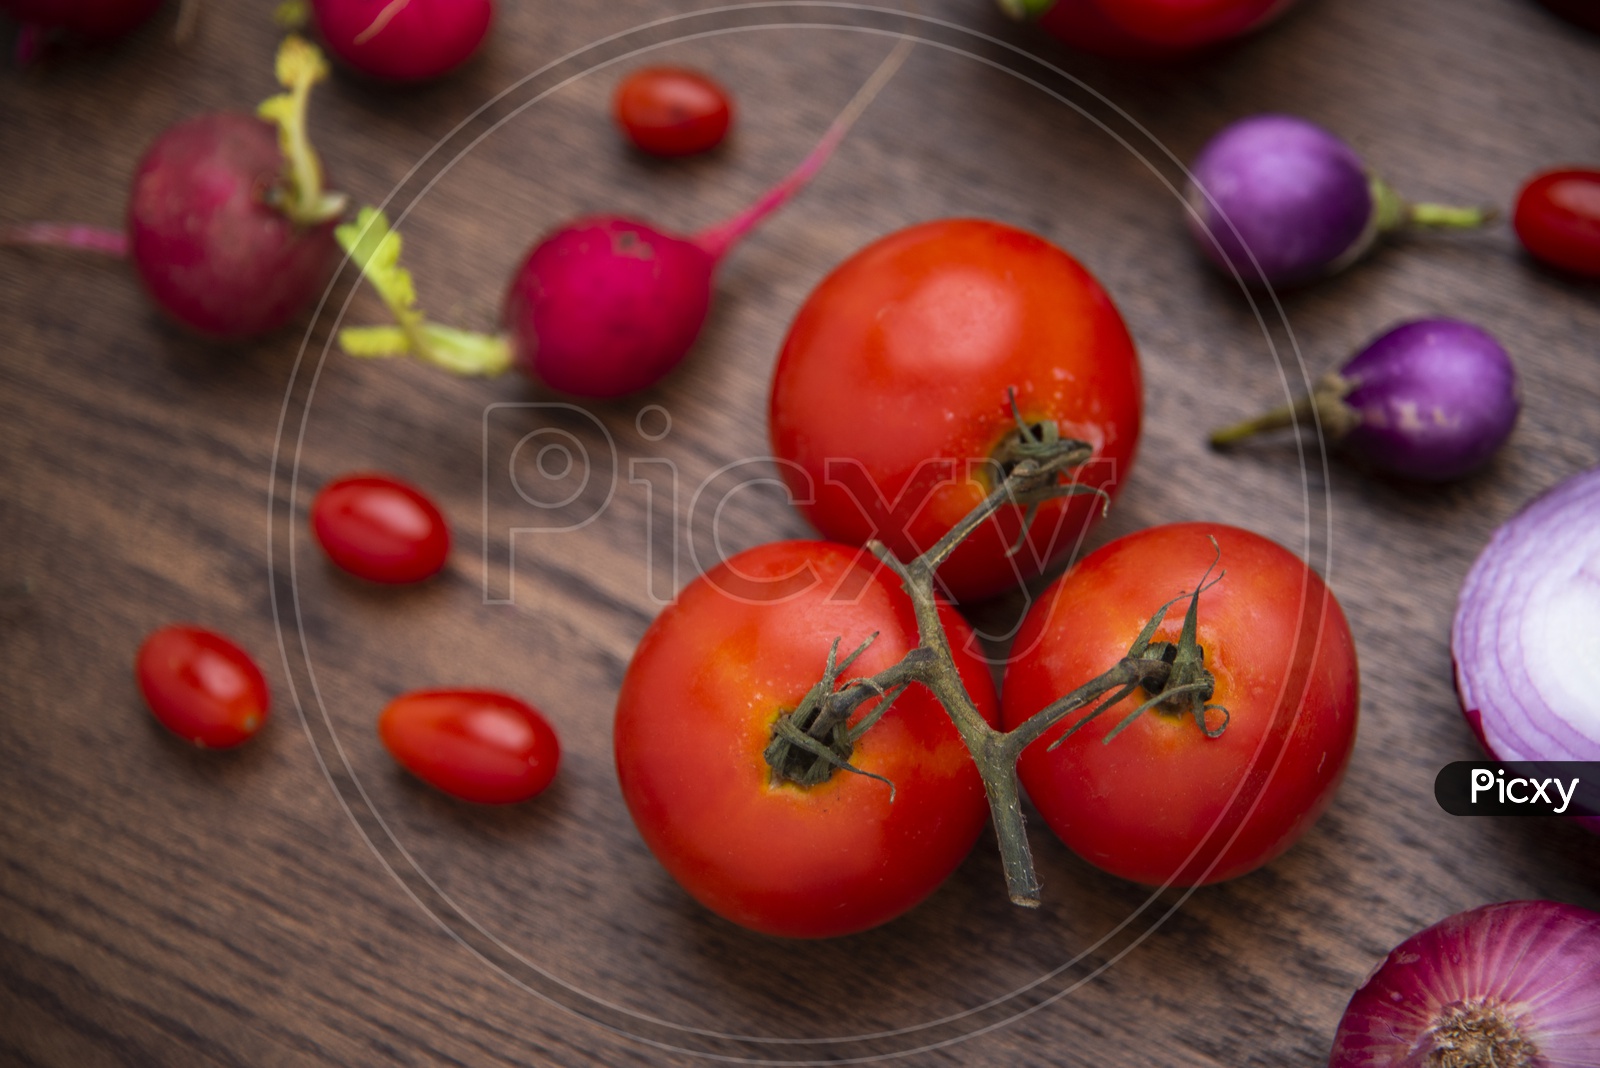 red vegetables set on wooden background